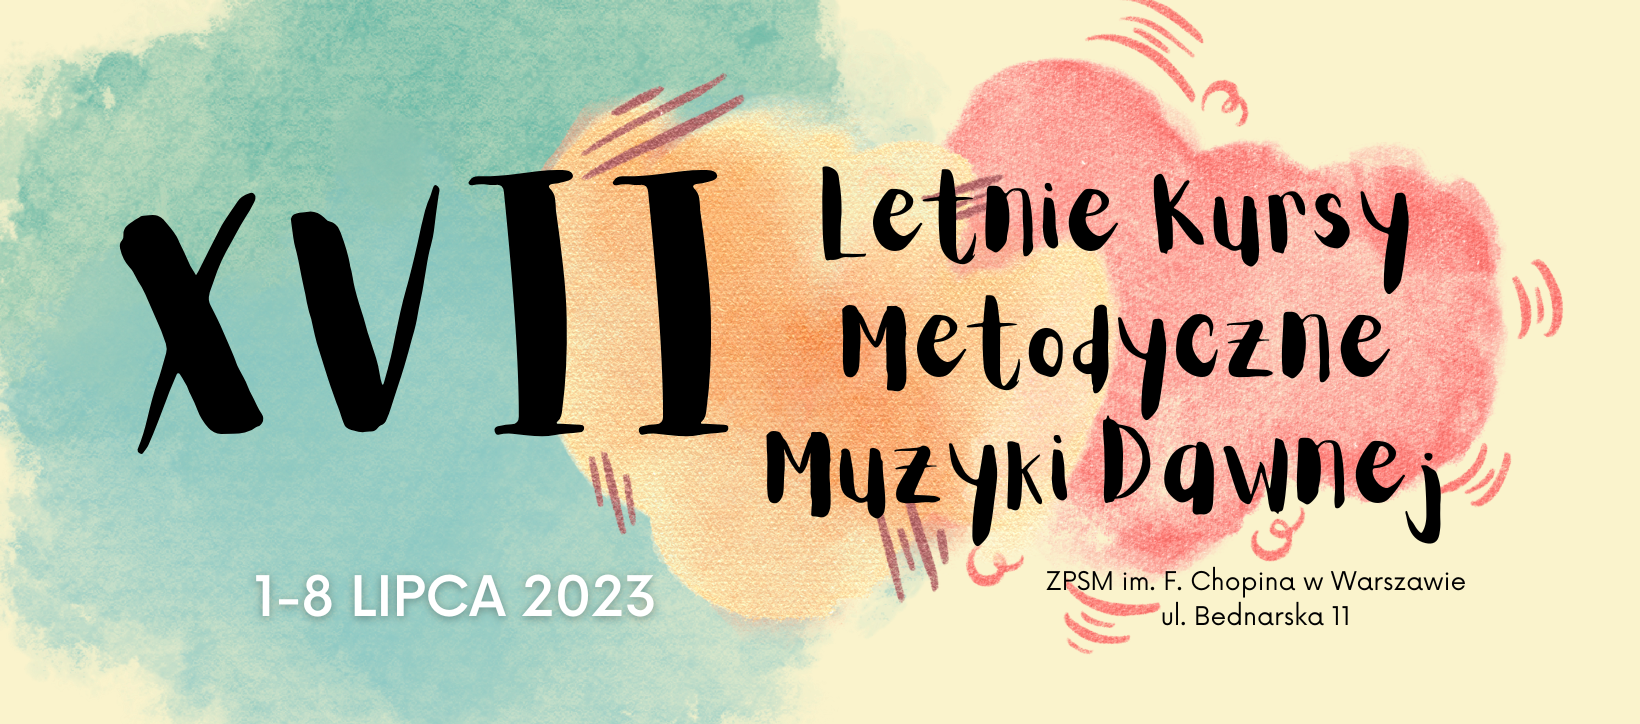 Logotyp - XVII Letnie Kursy Metodyczne Muzyki Dawnej w Warszawie